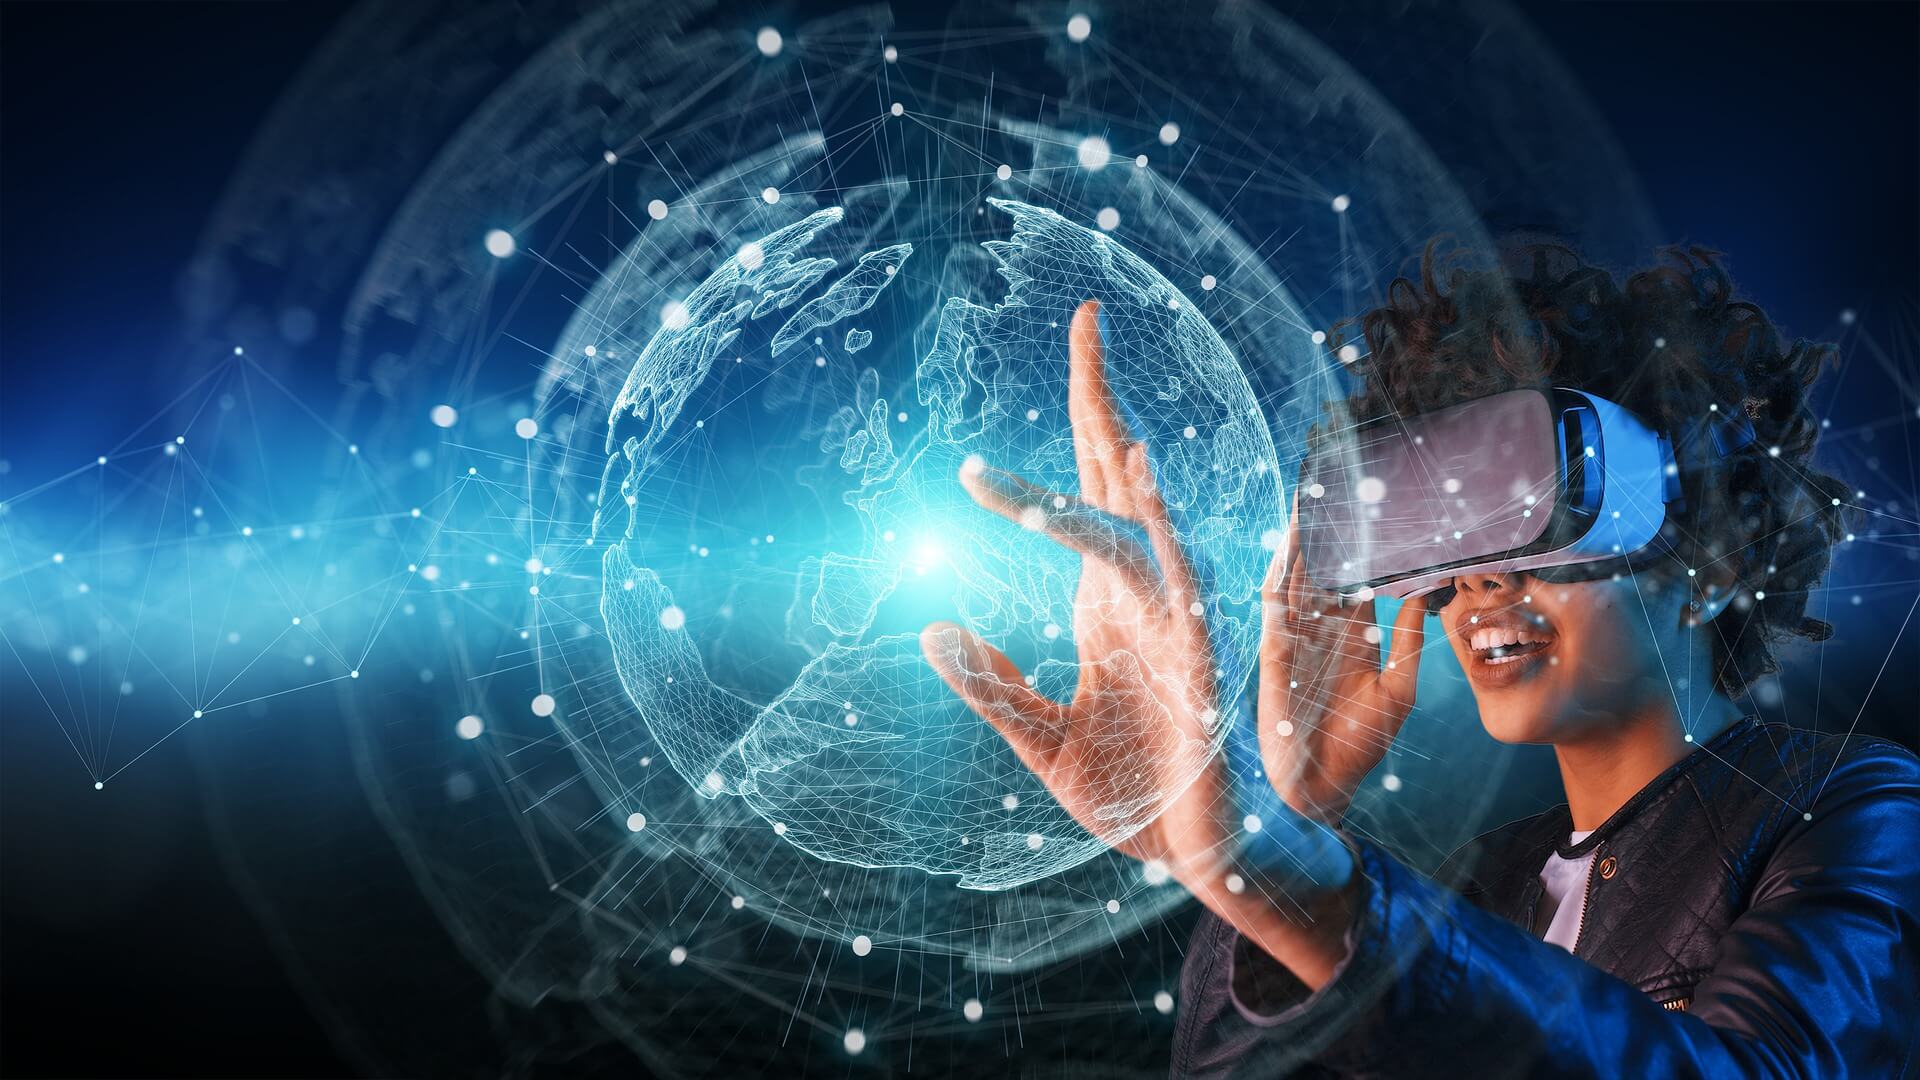 图片展示了一位戴着虚拟现实头盔的人，正用手触摸着呈现在其面前的三维数字地球，表情专注，科技感十足。